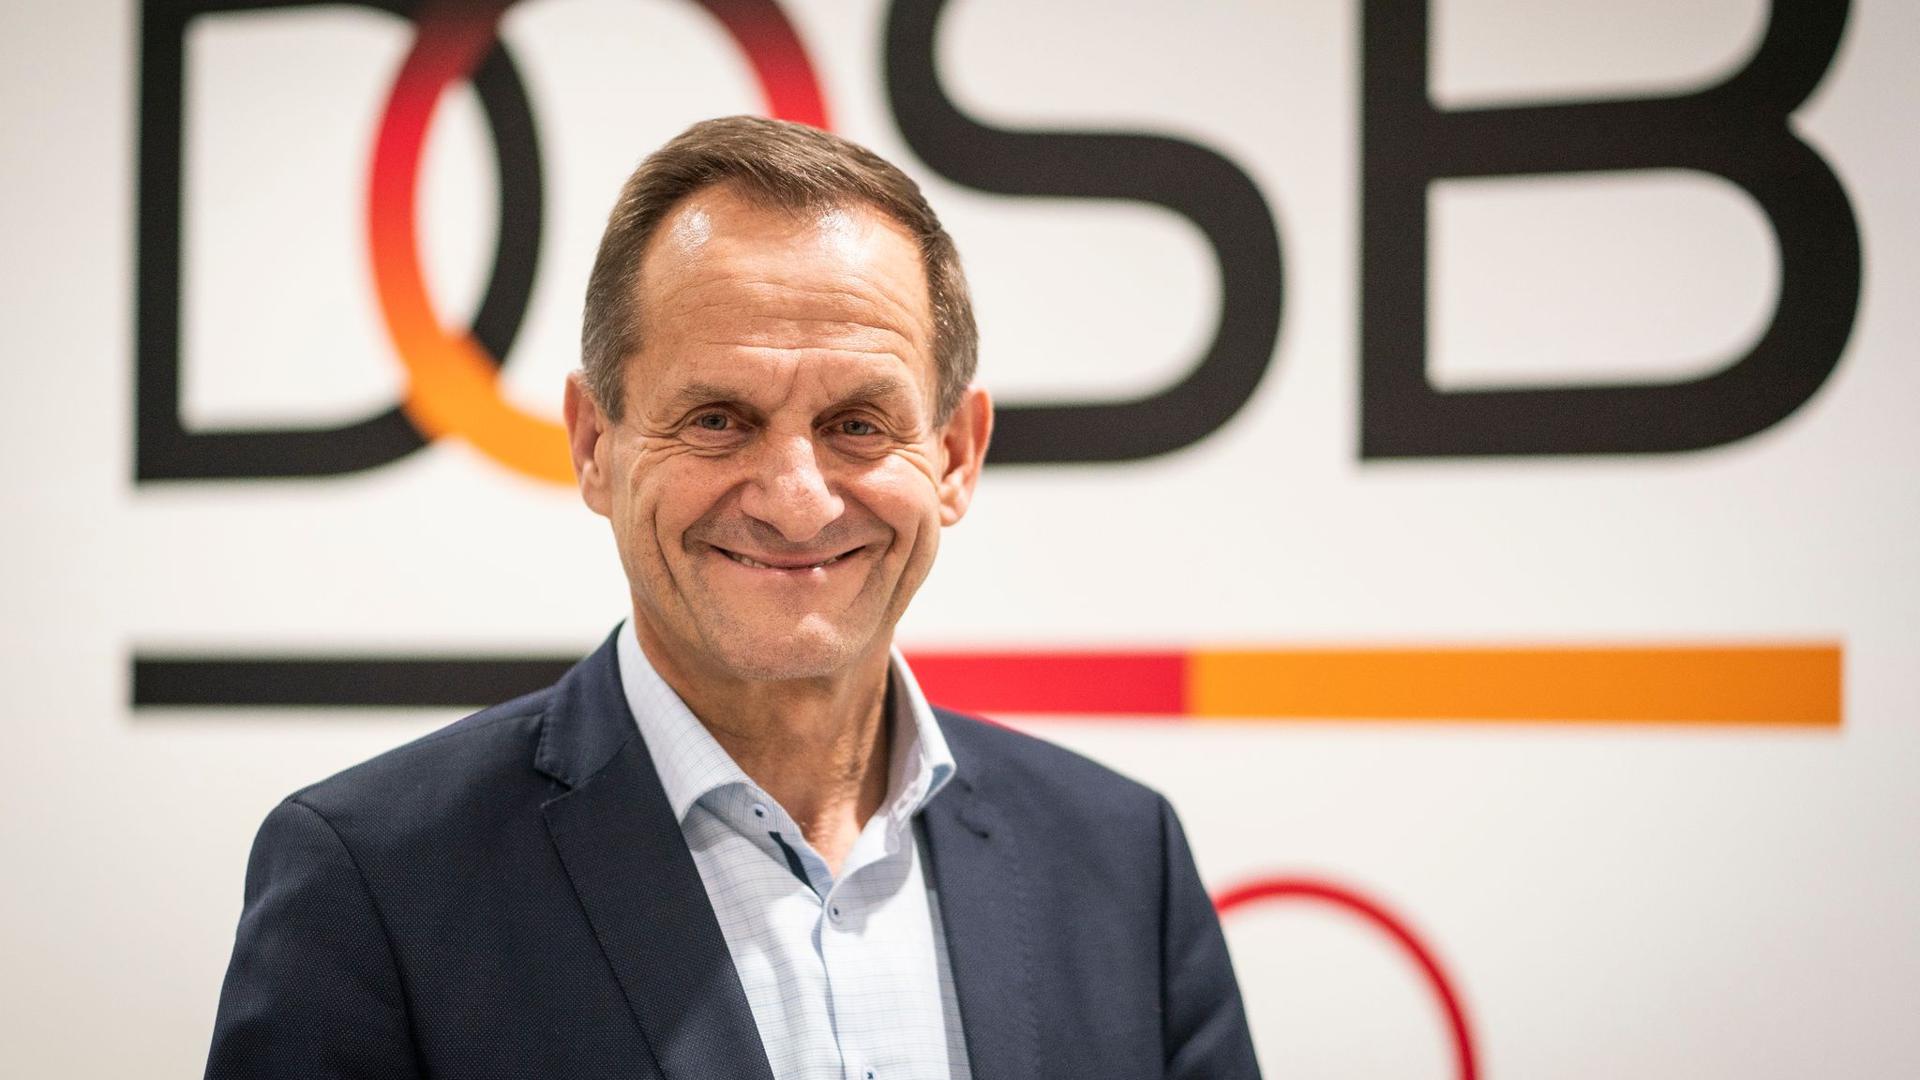 Alfons Hörmann ist der Präsident des Deutschen Olympischen Sportbundes (DOSB).